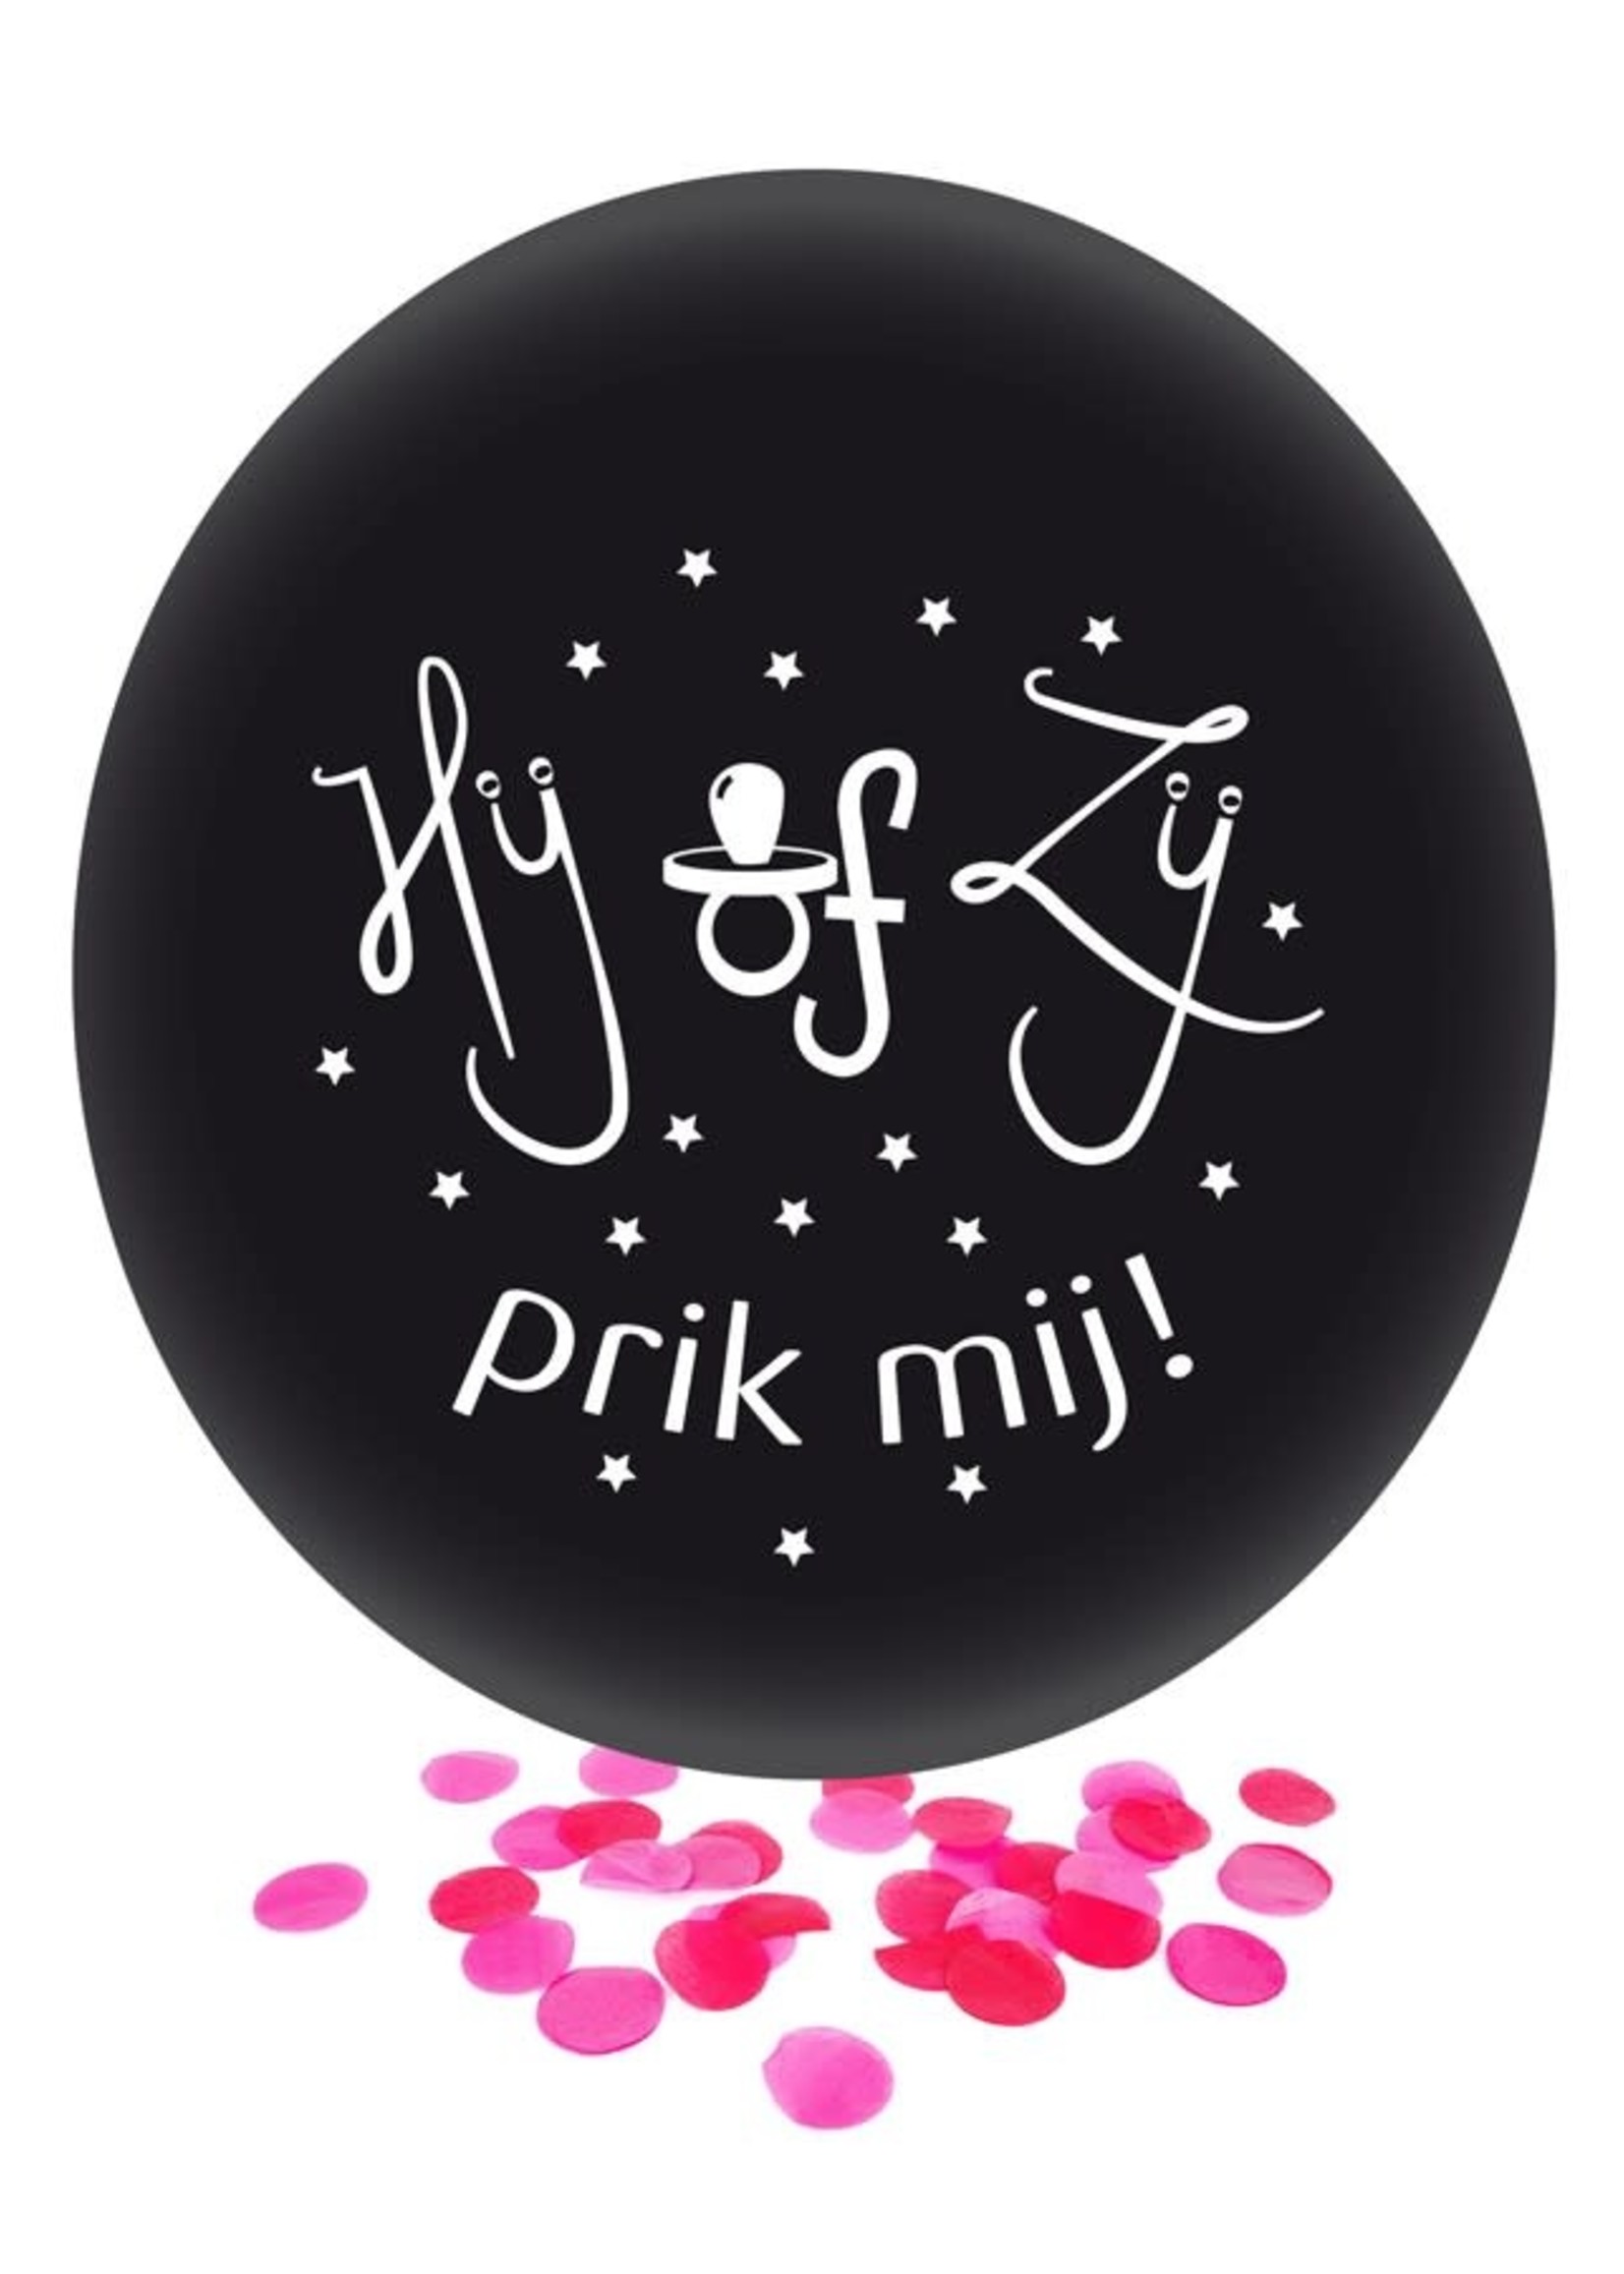 Feestkleding Breda Gender Reveal ballon  Hij of Zij prik mij roze